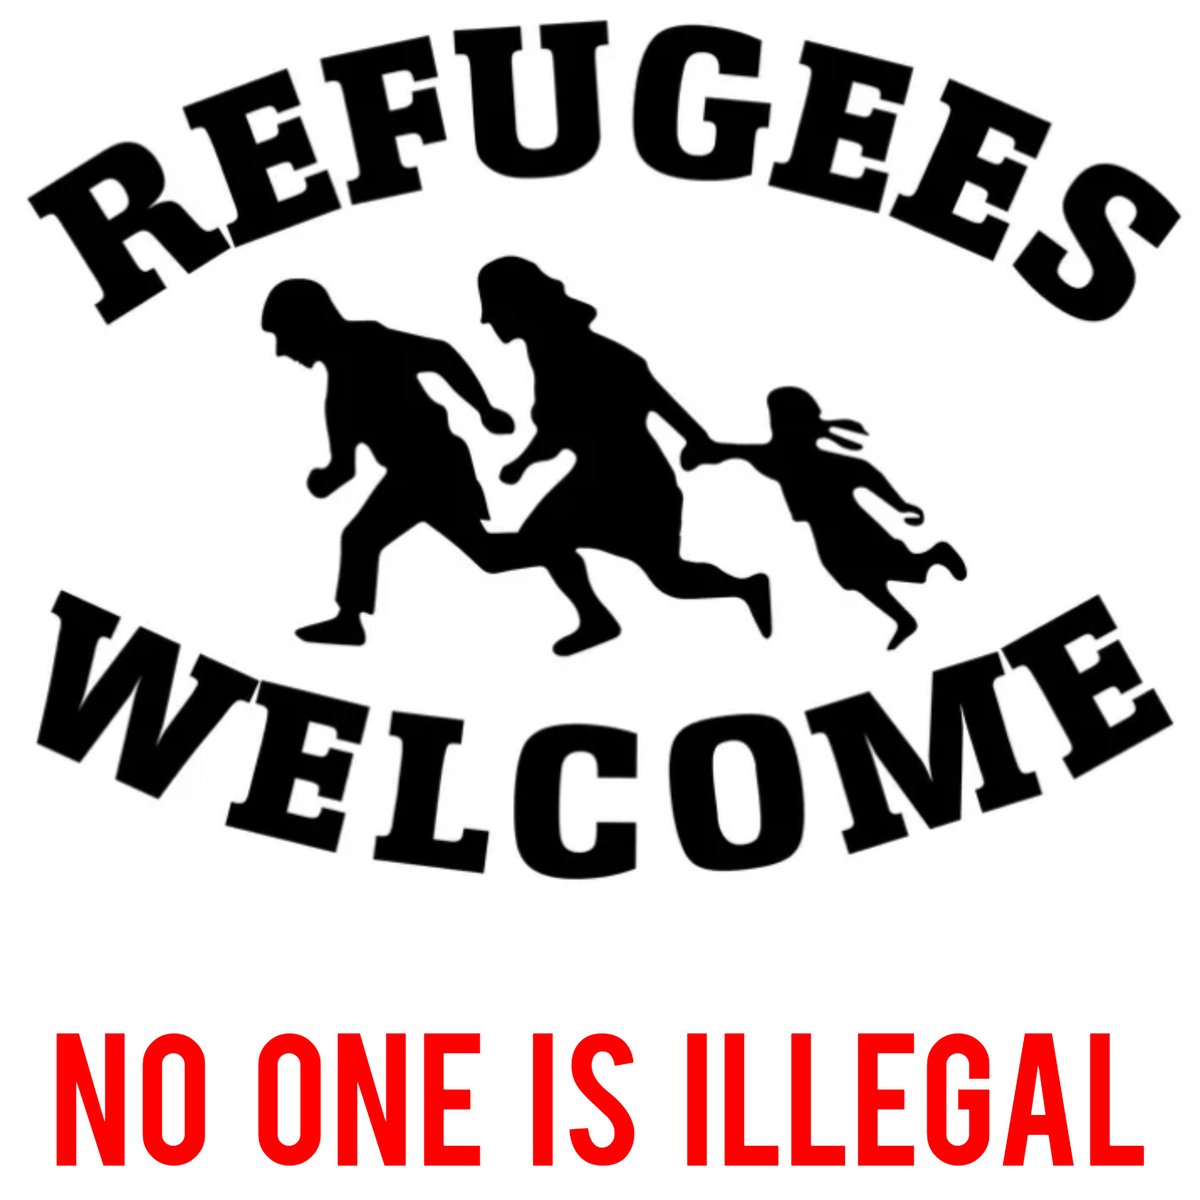 Seperti Jakarta yang selalu terbuka bagi para pendatang #NoRoomForRacism #RefugeesWelcome #NoOneIsIllegal